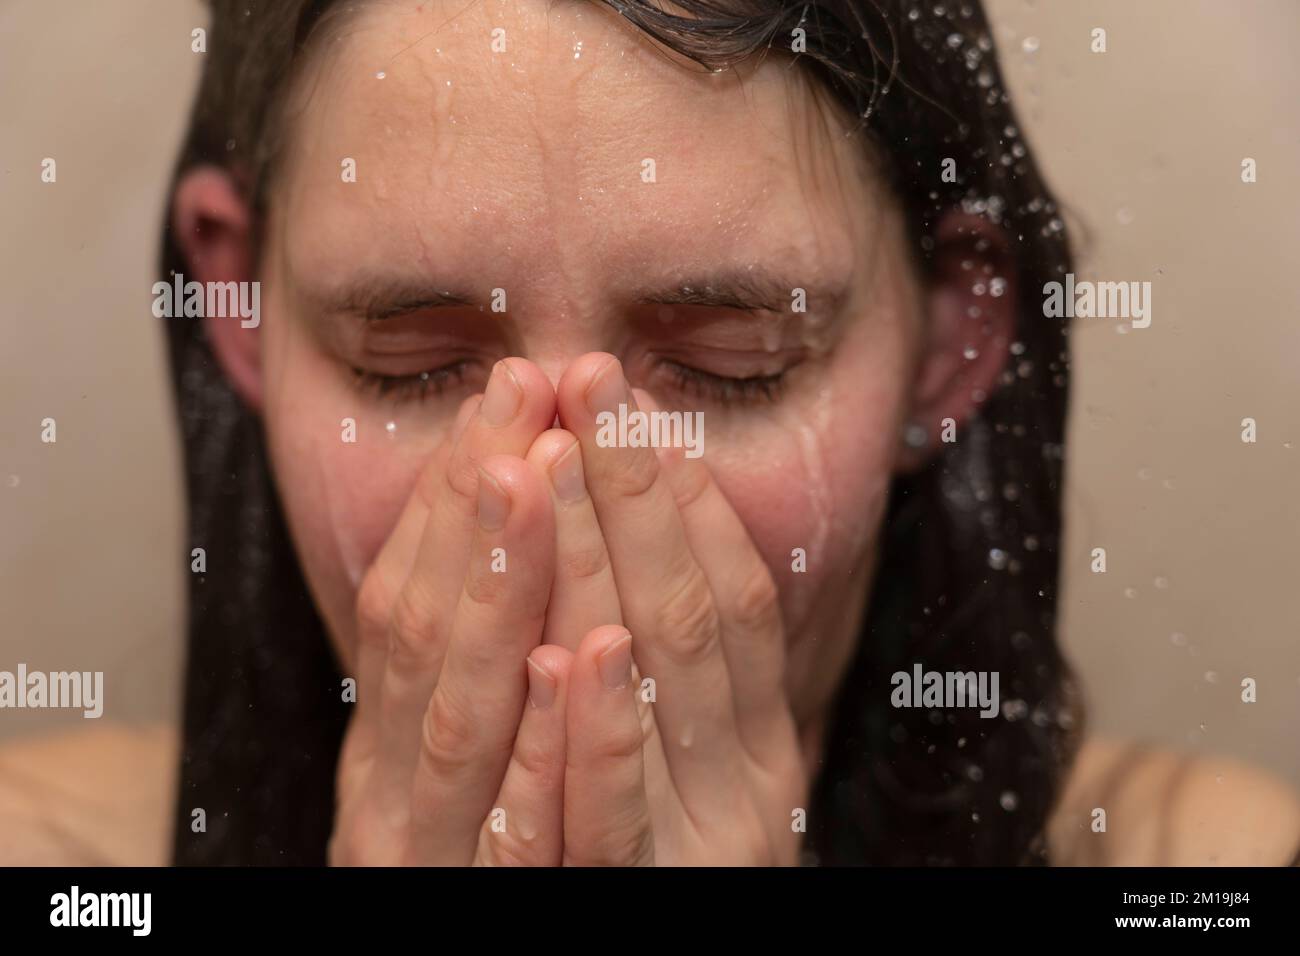 Giovane donna sotto la doccia con acqua che corre giù il suo volto emotivo. Concetto: Disturbo bipolare, salute mentale, sensazione di tristezza, sensazione di malessere, tristezza Foto Stock